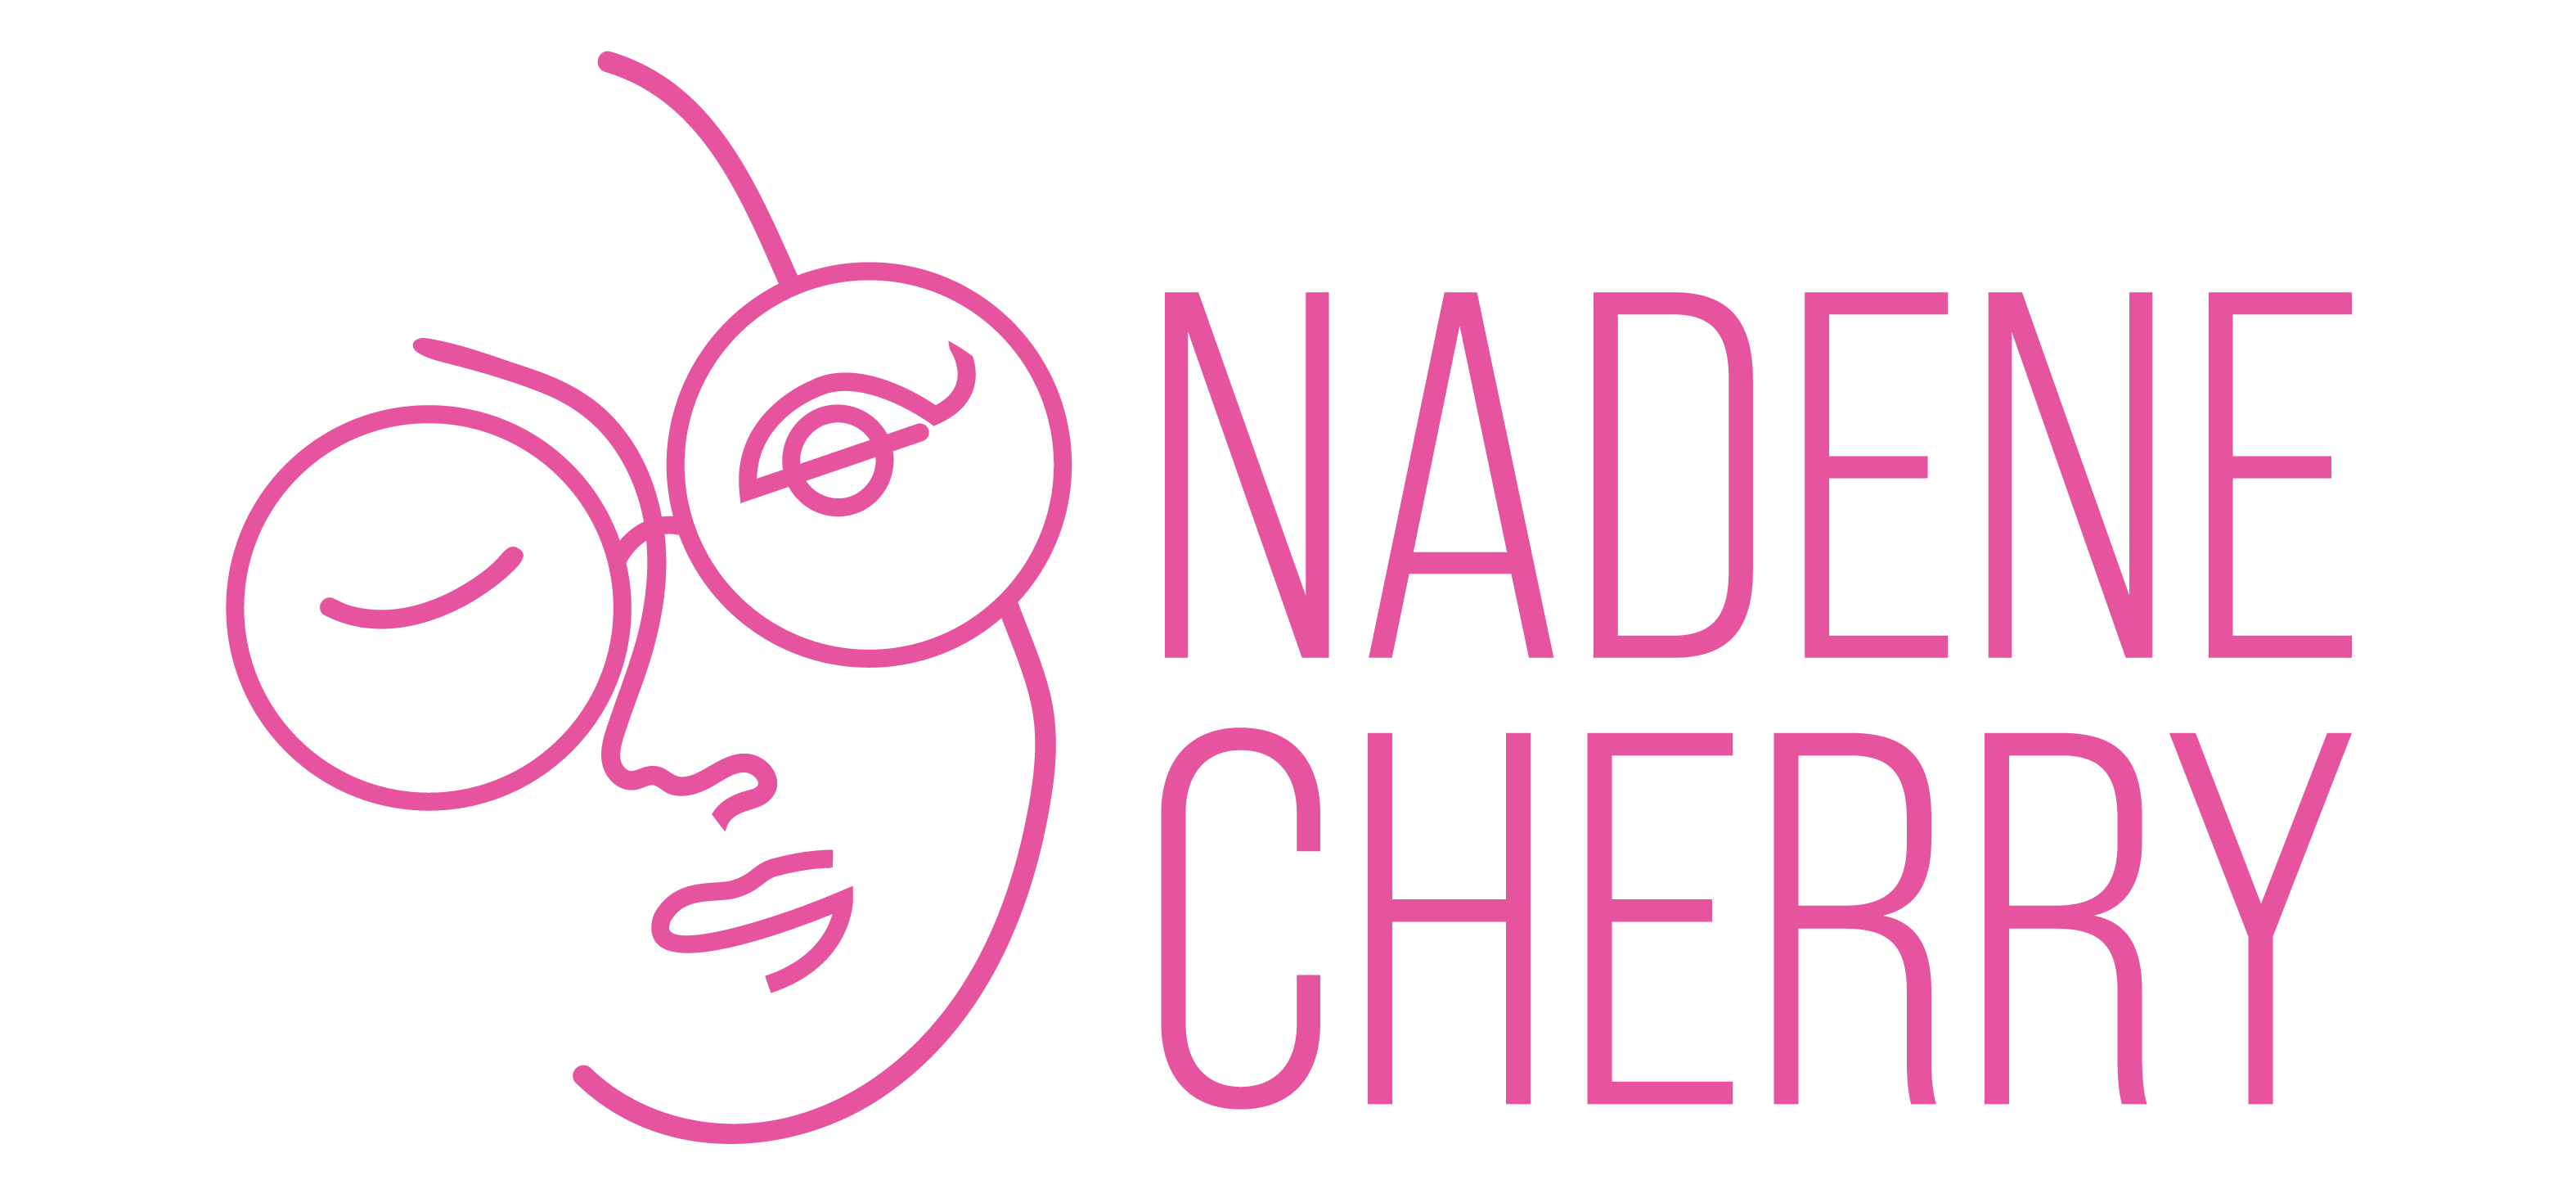 Nadene Cherry